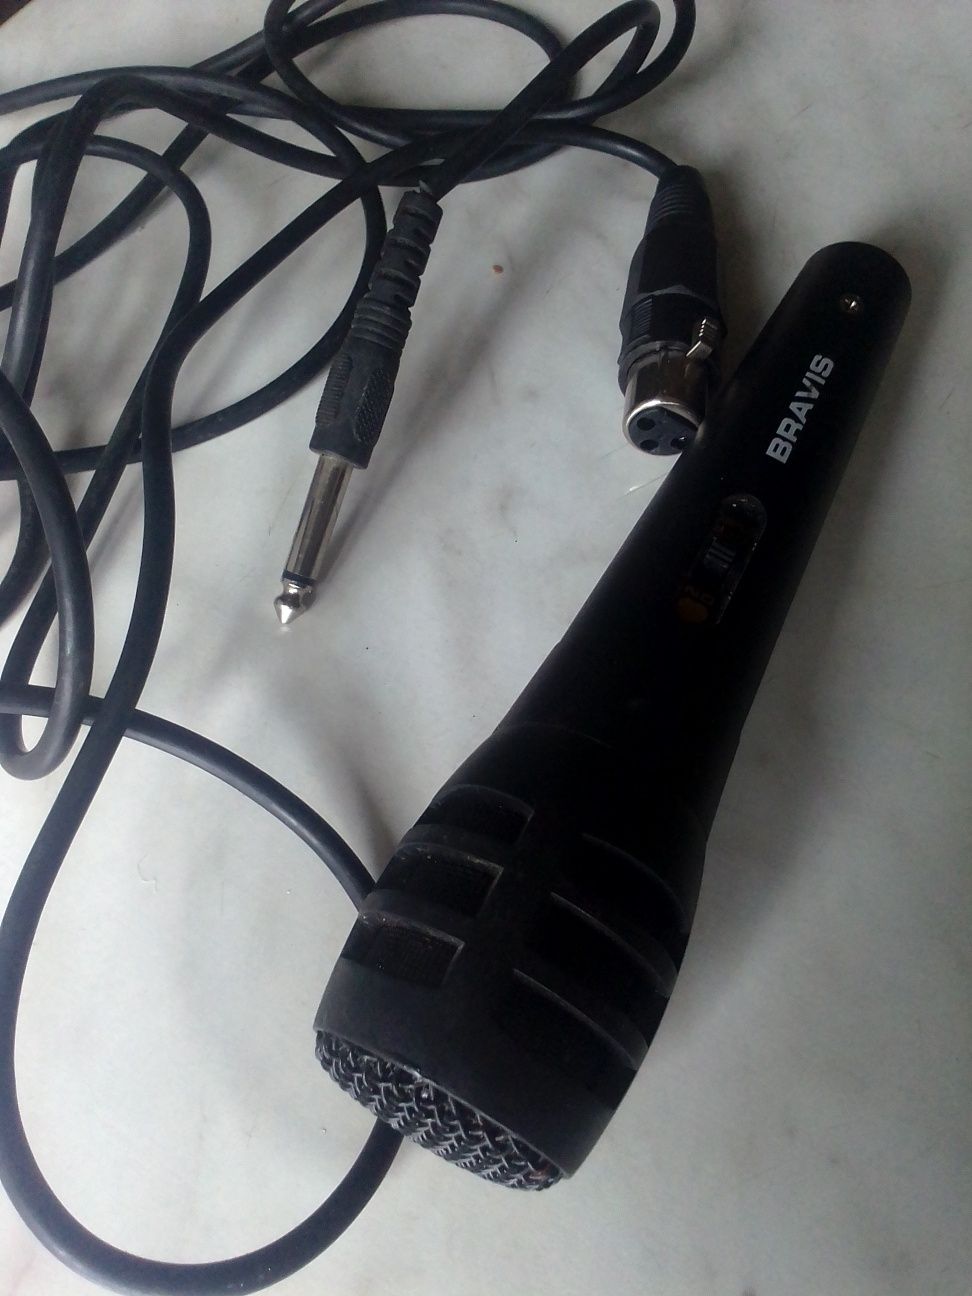 BRAVIS мікрофон зі шуром3м.б/у стан роботи невідомий ц.300гр.